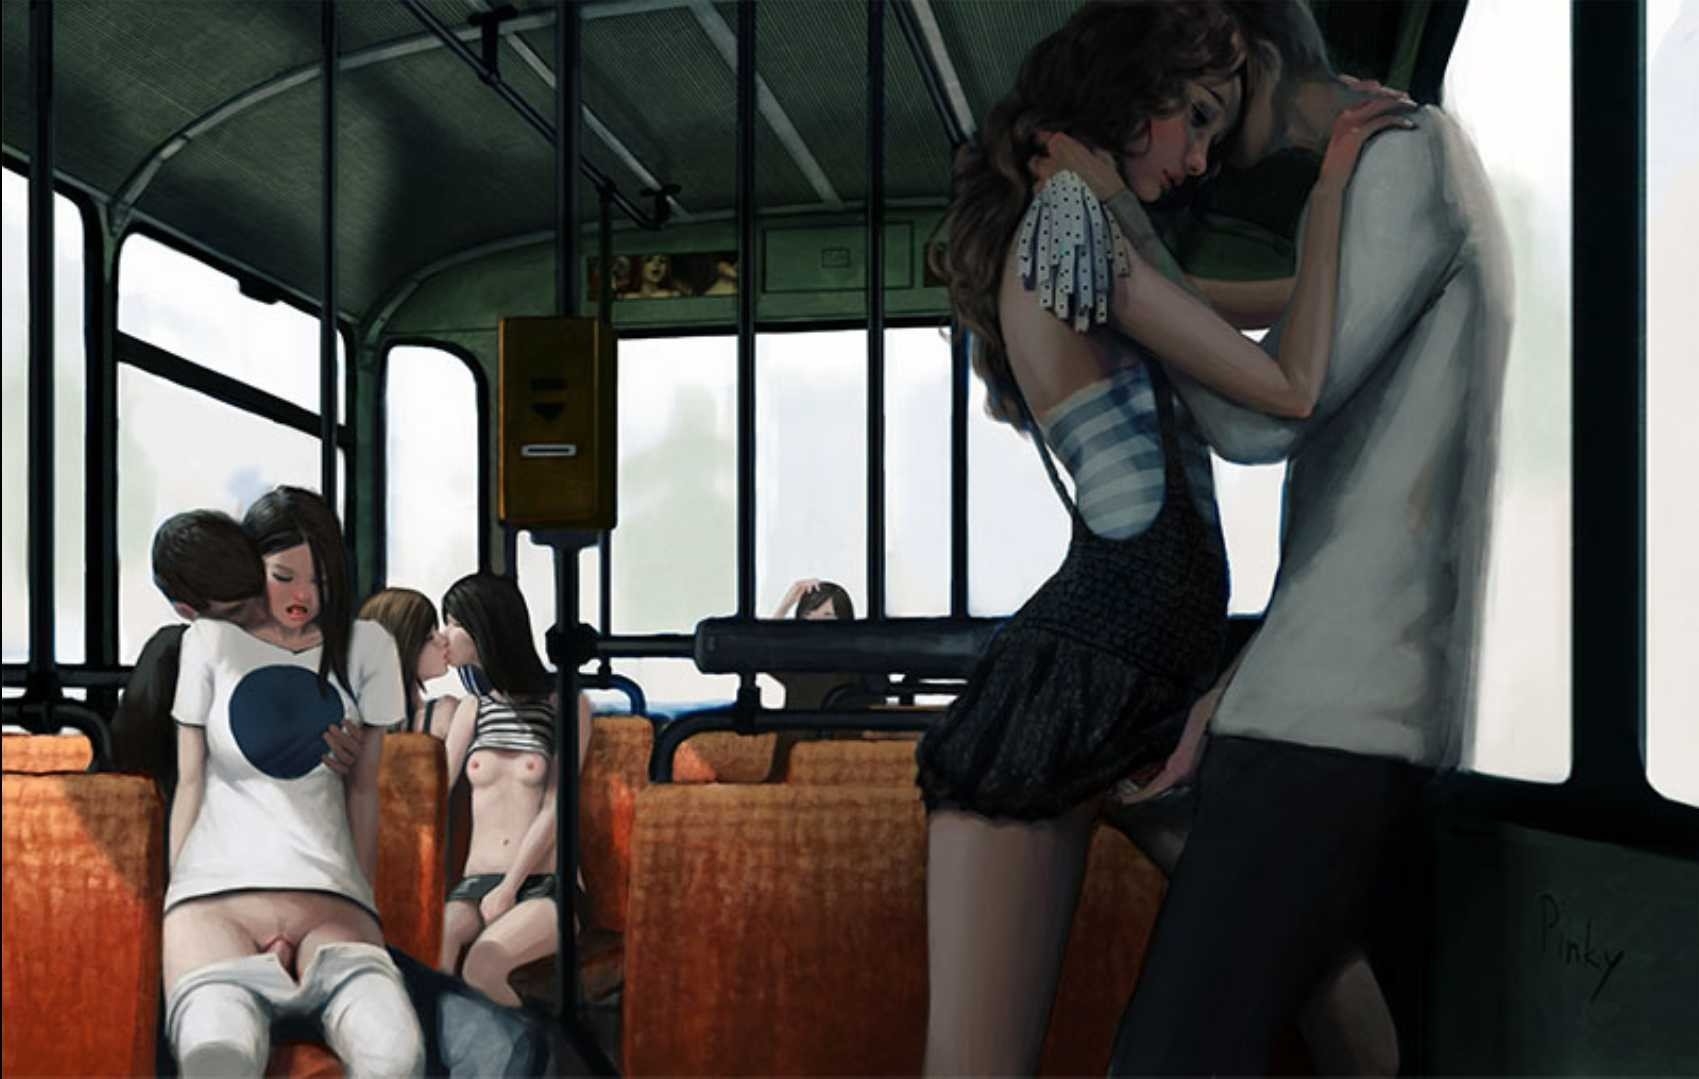 Порно игры в транспорте (120) фото